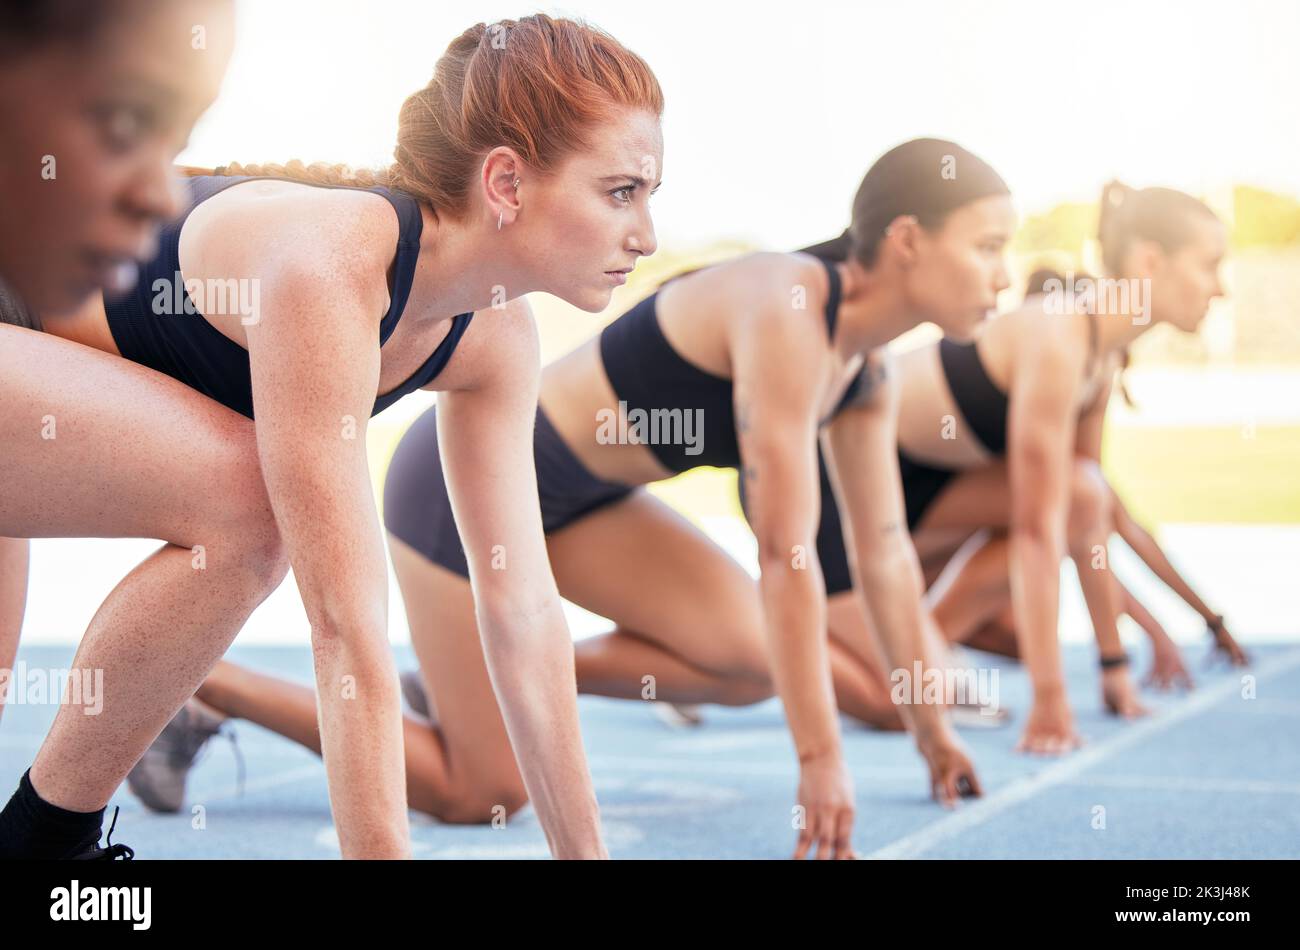 Laufwettbewerb, Sport Start und Frauen im Marathon Rennen für Fitness im Stadion, entschlossen, zu gewinnen und Kraft für Cardio-Event zusammen. Konzentriert Stockfoto